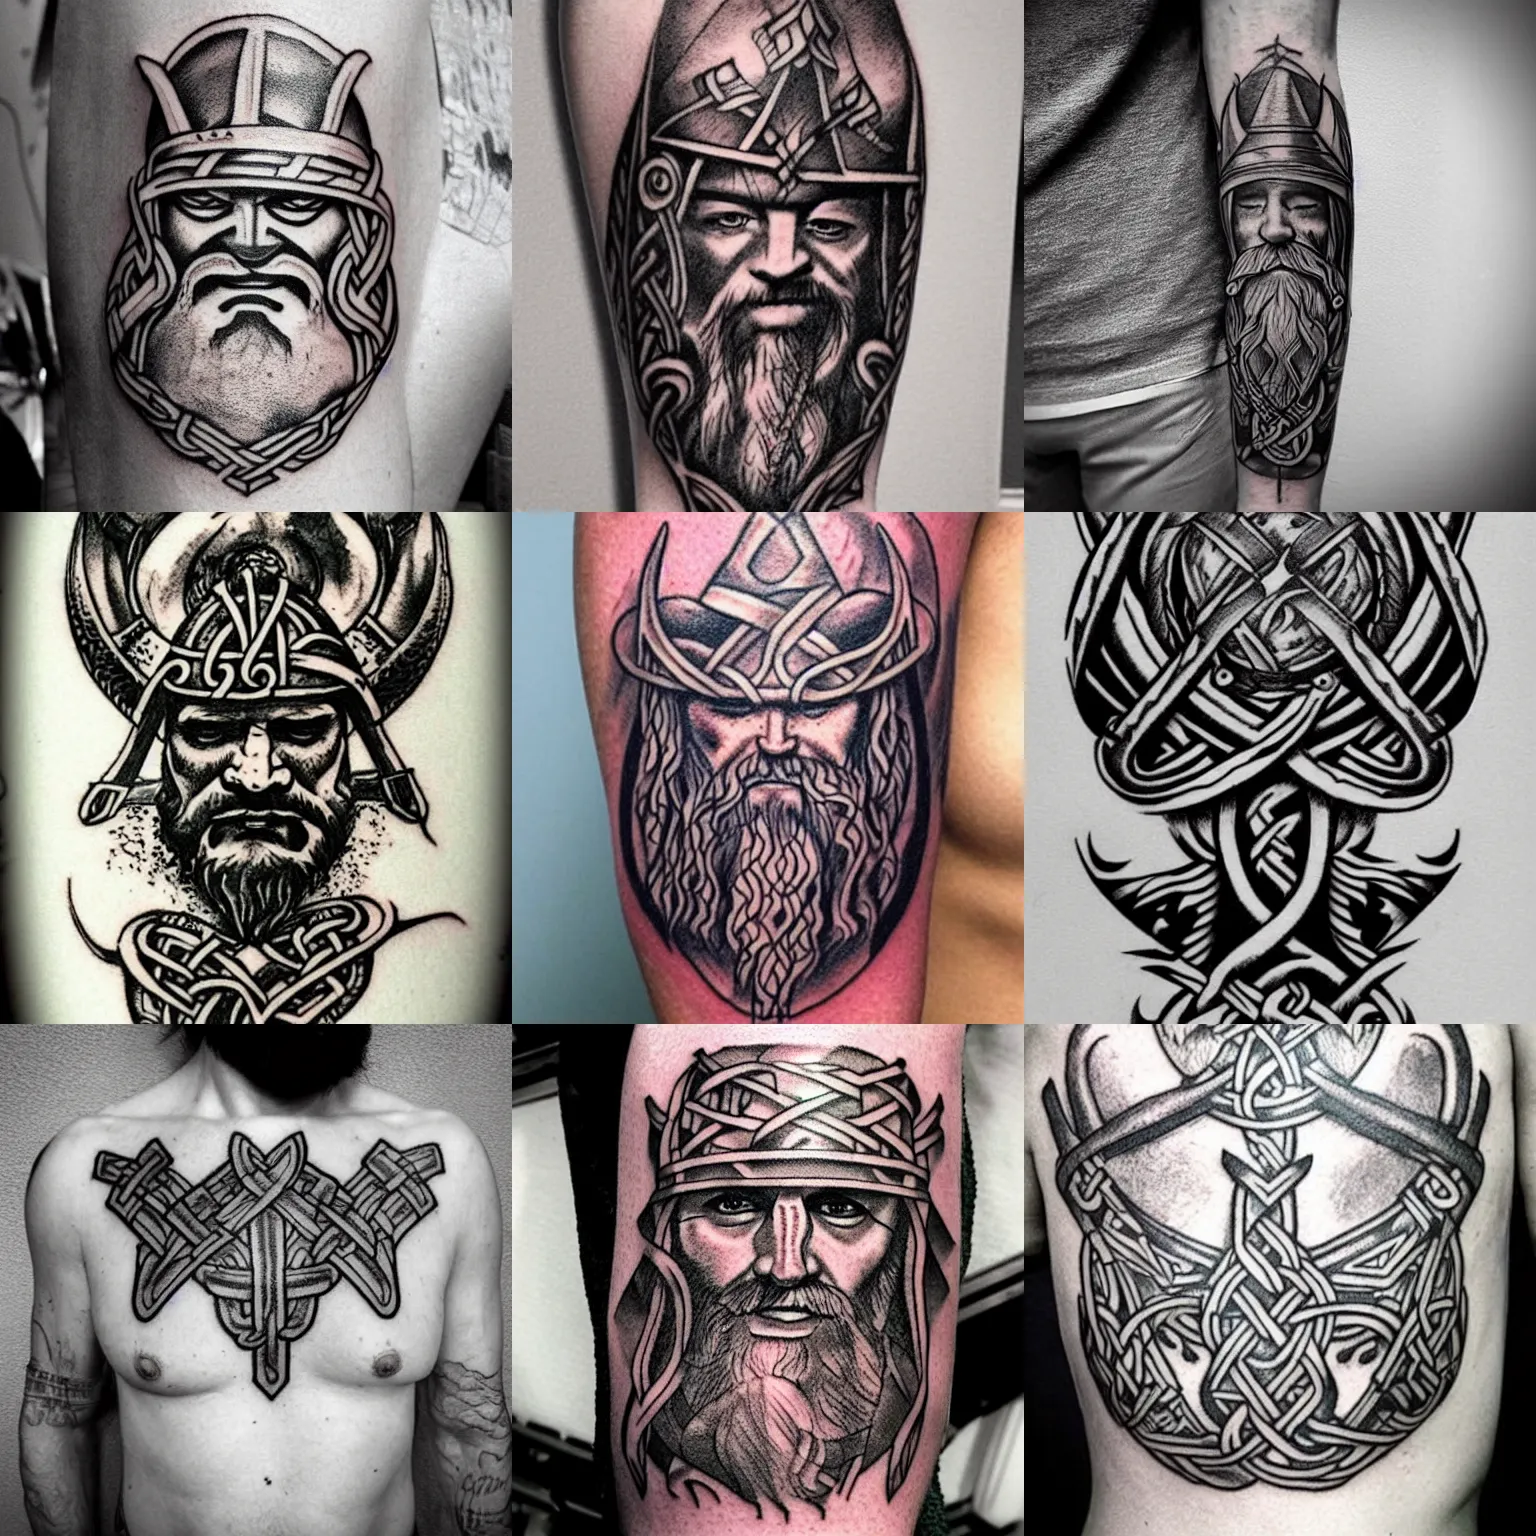 Prompt: viking sketch tattoo